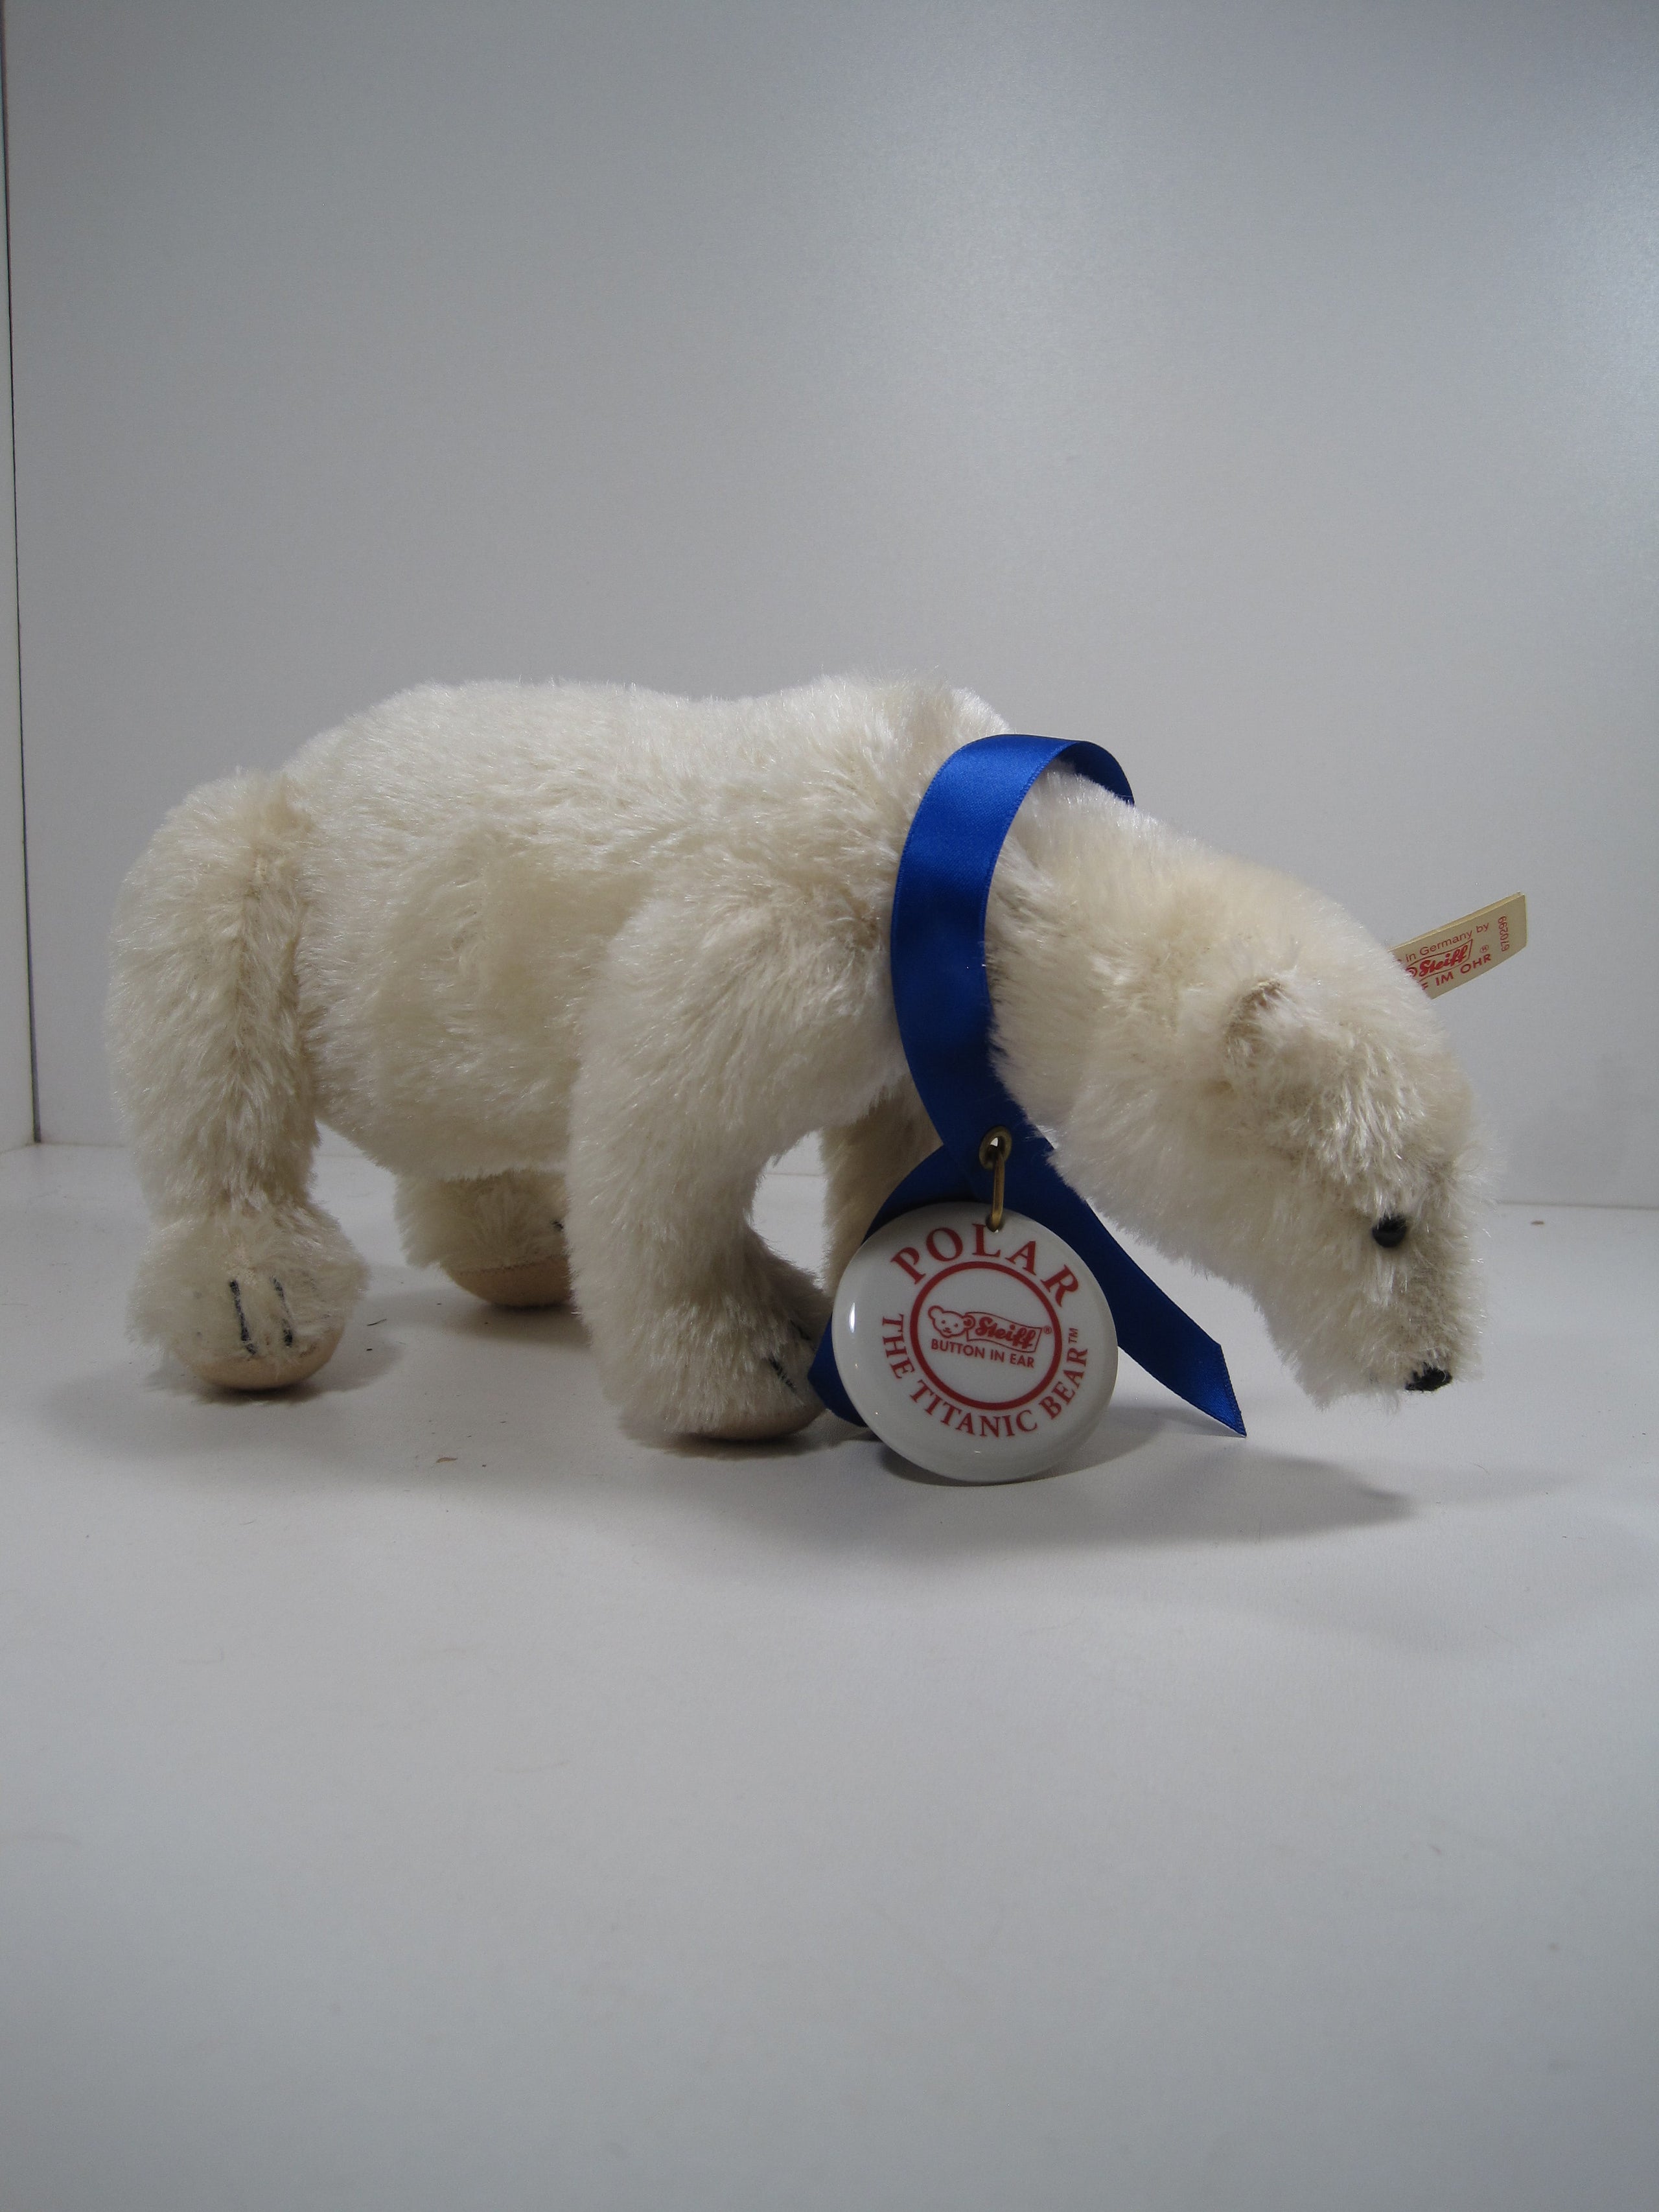 Steiff Polar The Titanic Bear With All IDs | My Site